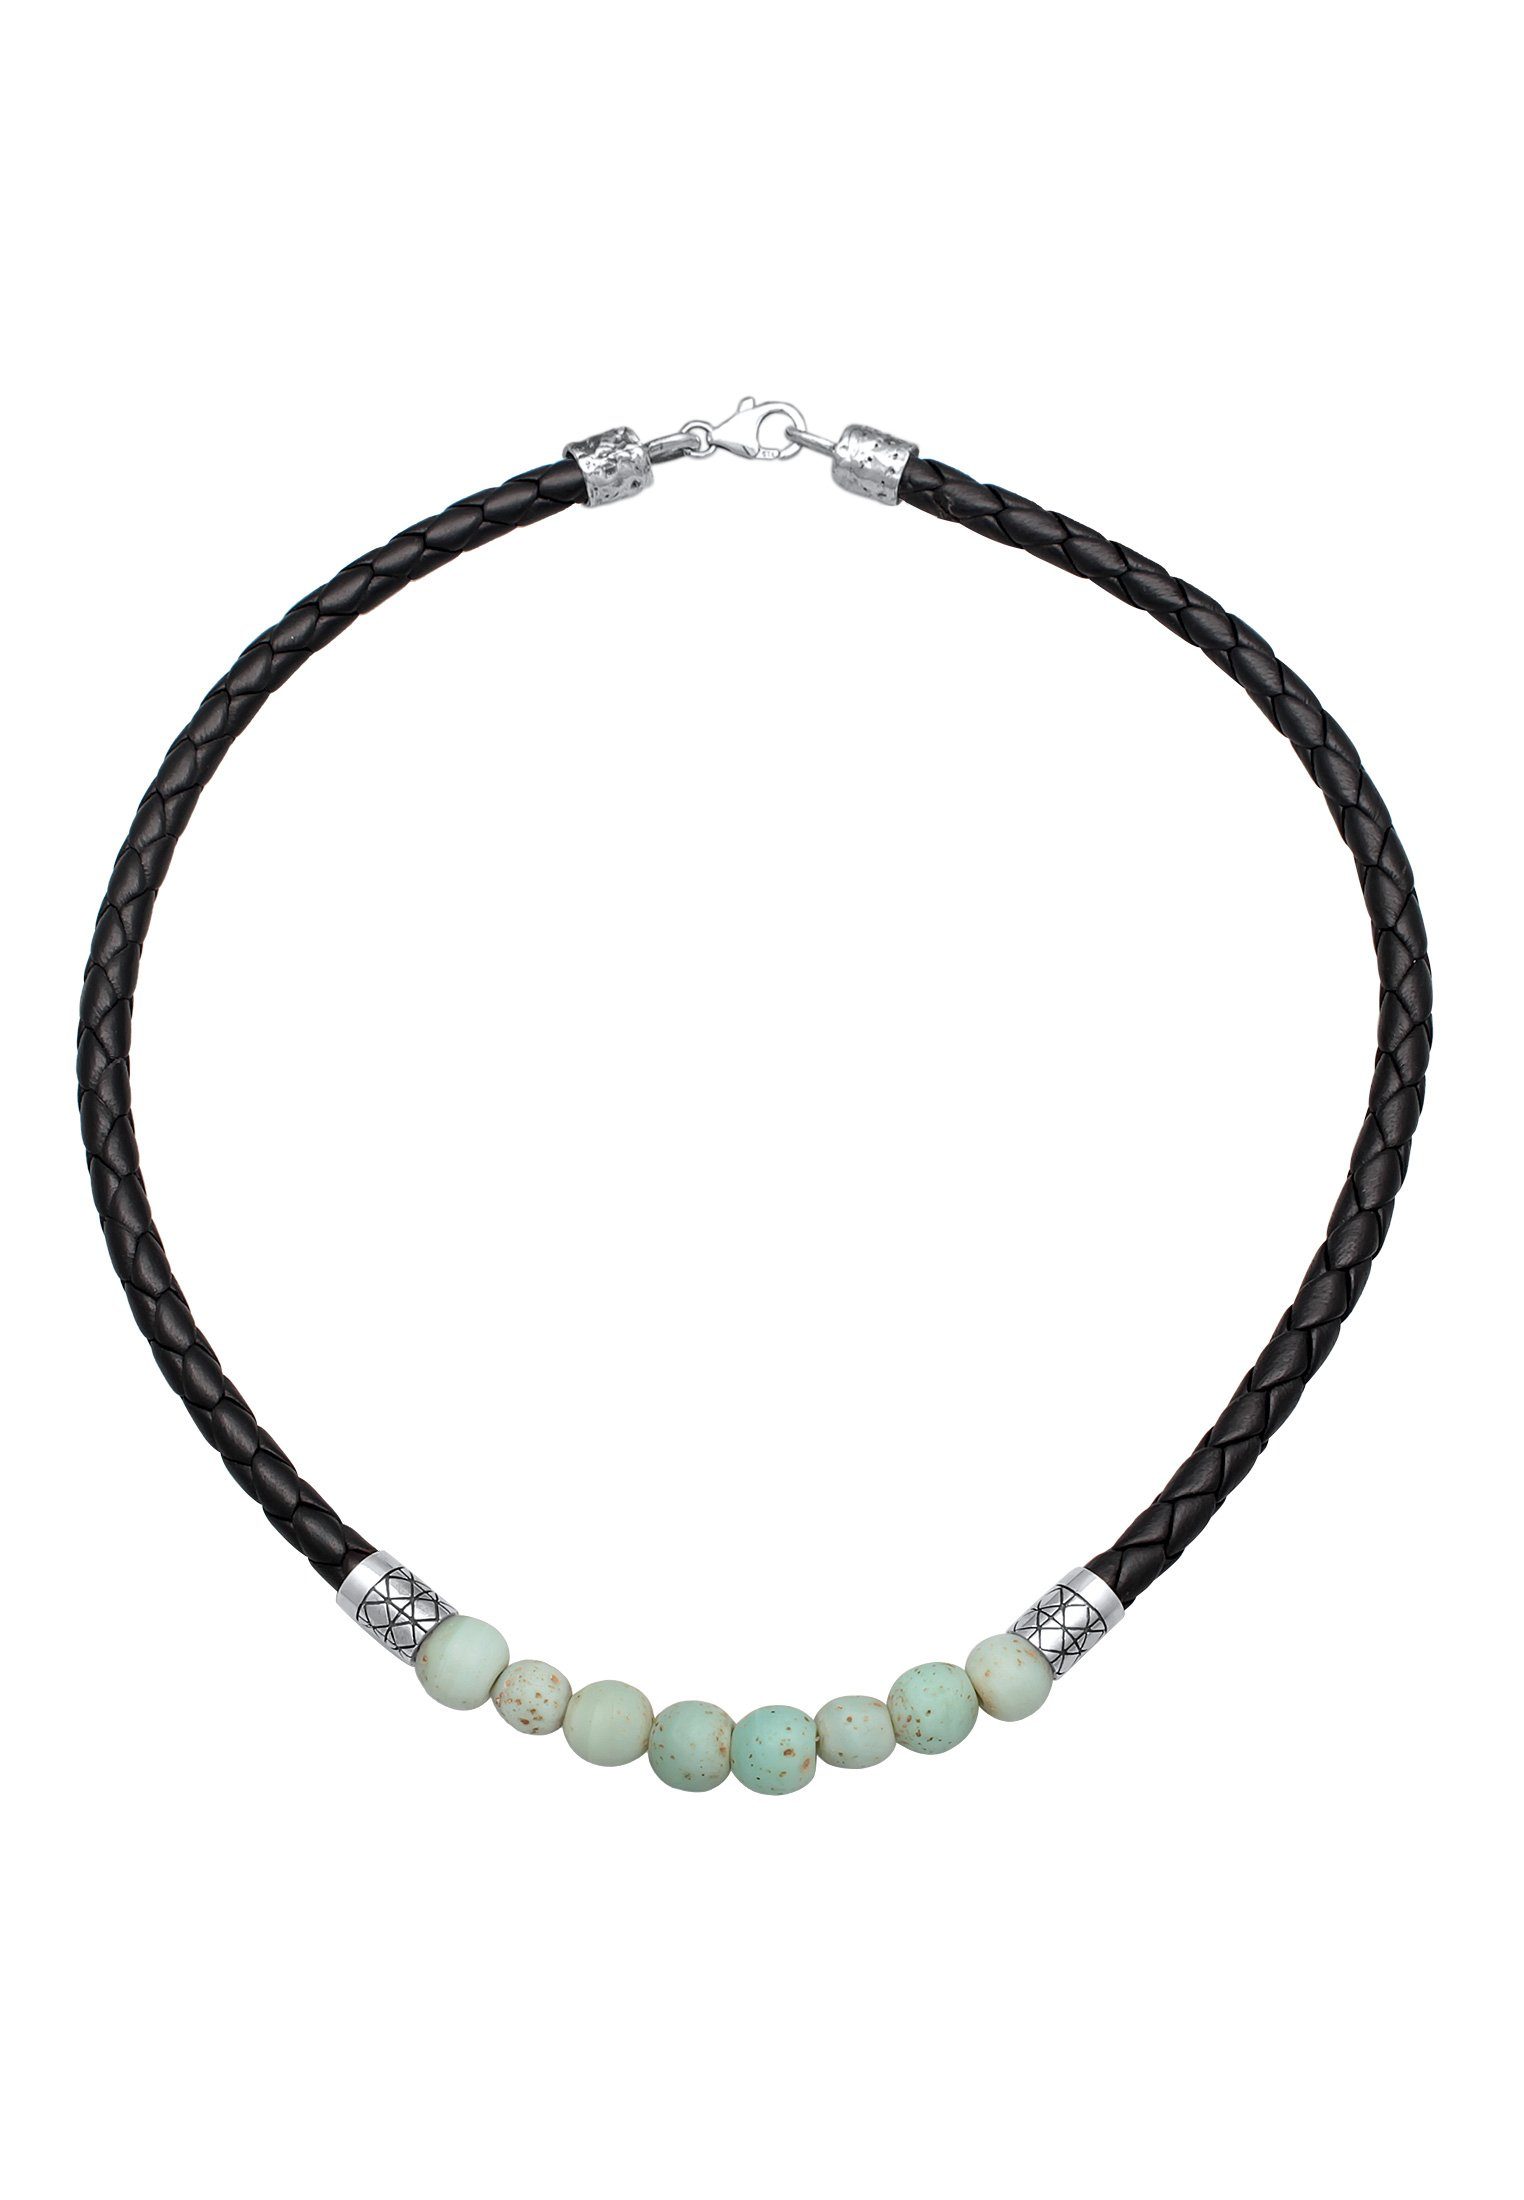 Kuzzoi Lederband Lederkette Glas Silber Beads 925